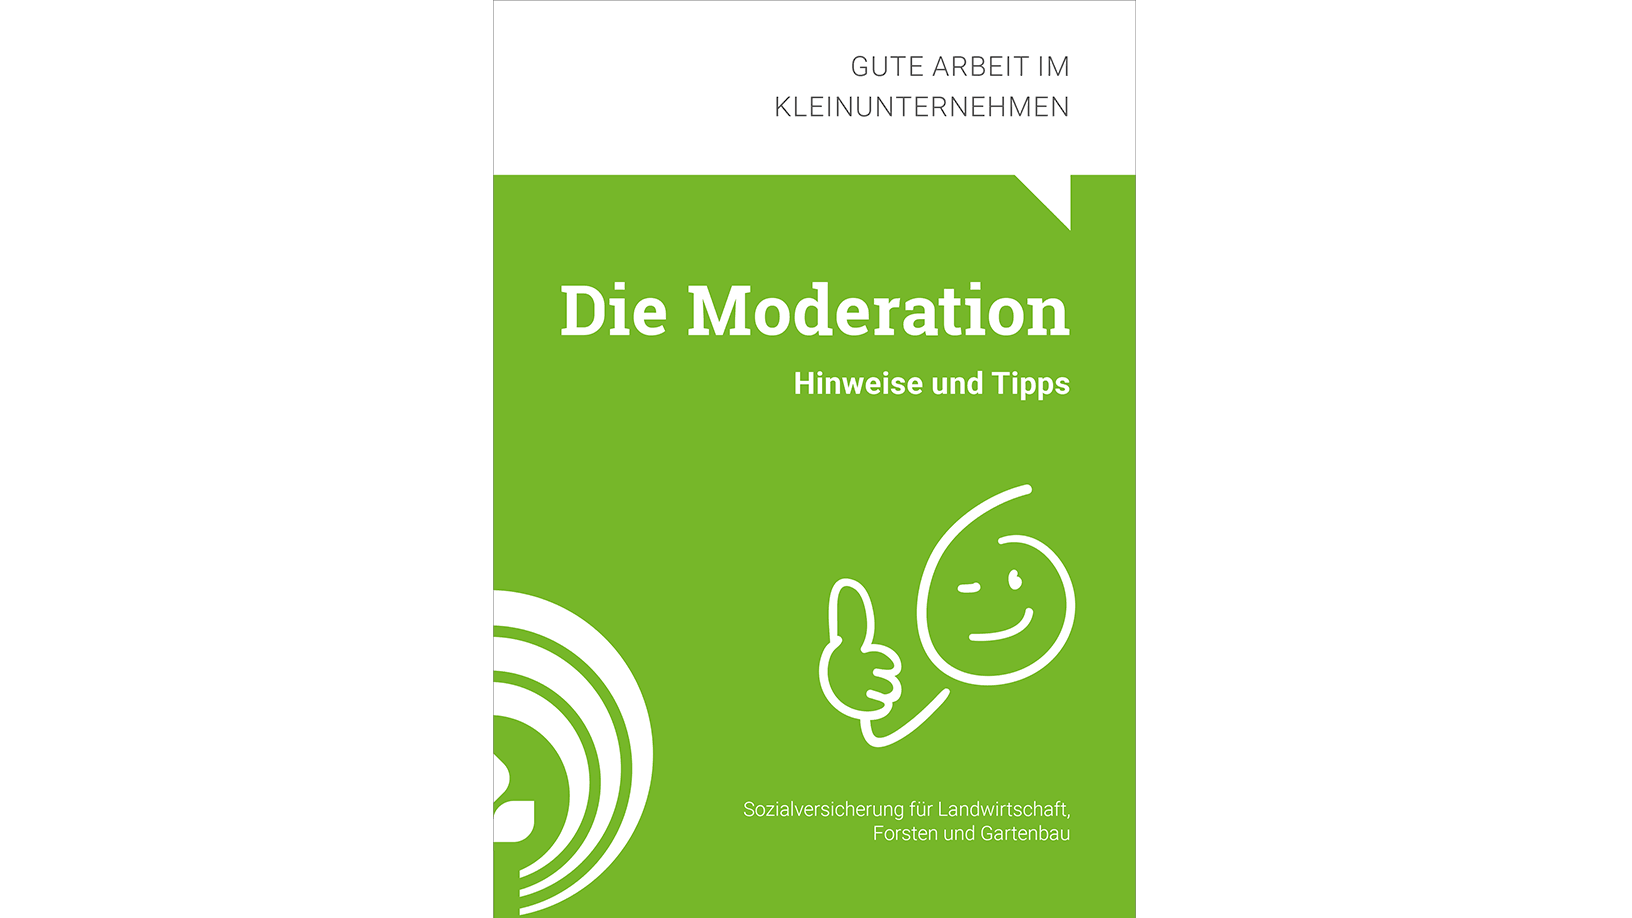 Vergrößerung des Bildes für Titel der Broschüre "Die Moderation".